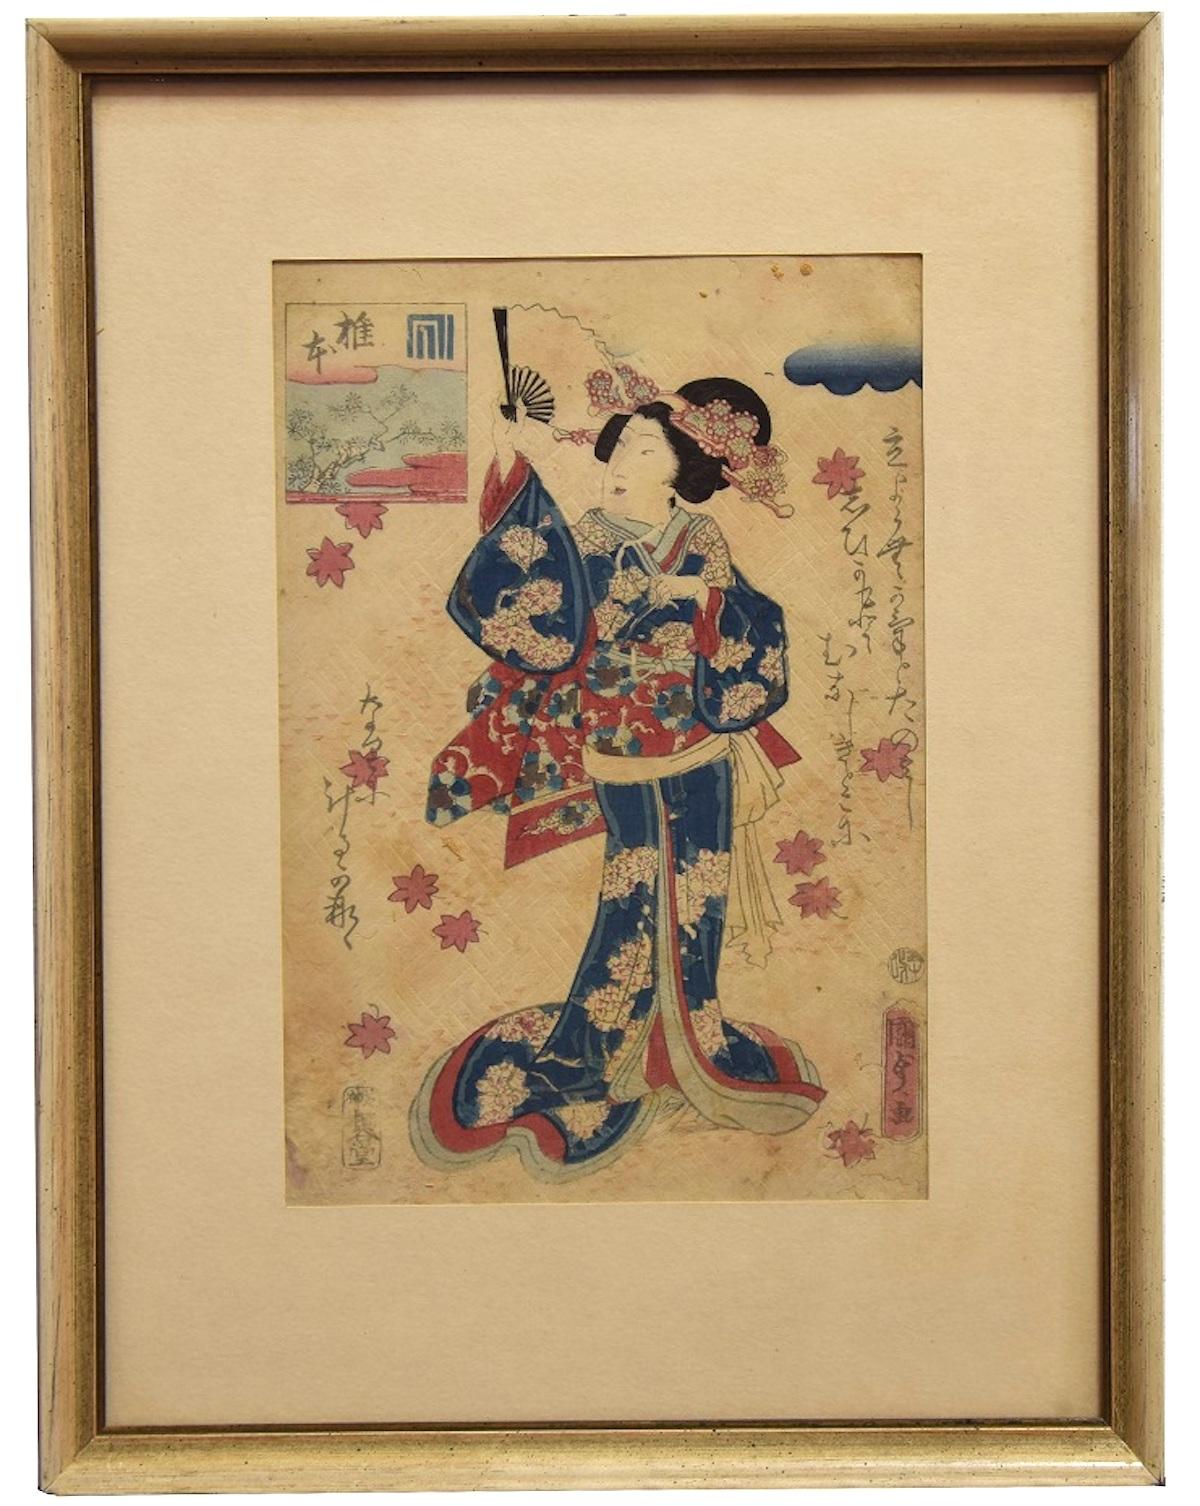 Oriental Woman with Fan - Woodcut by Utagawa Kunisada - 1860s - Print by Utagawa Kunisada (Toyokuni III)